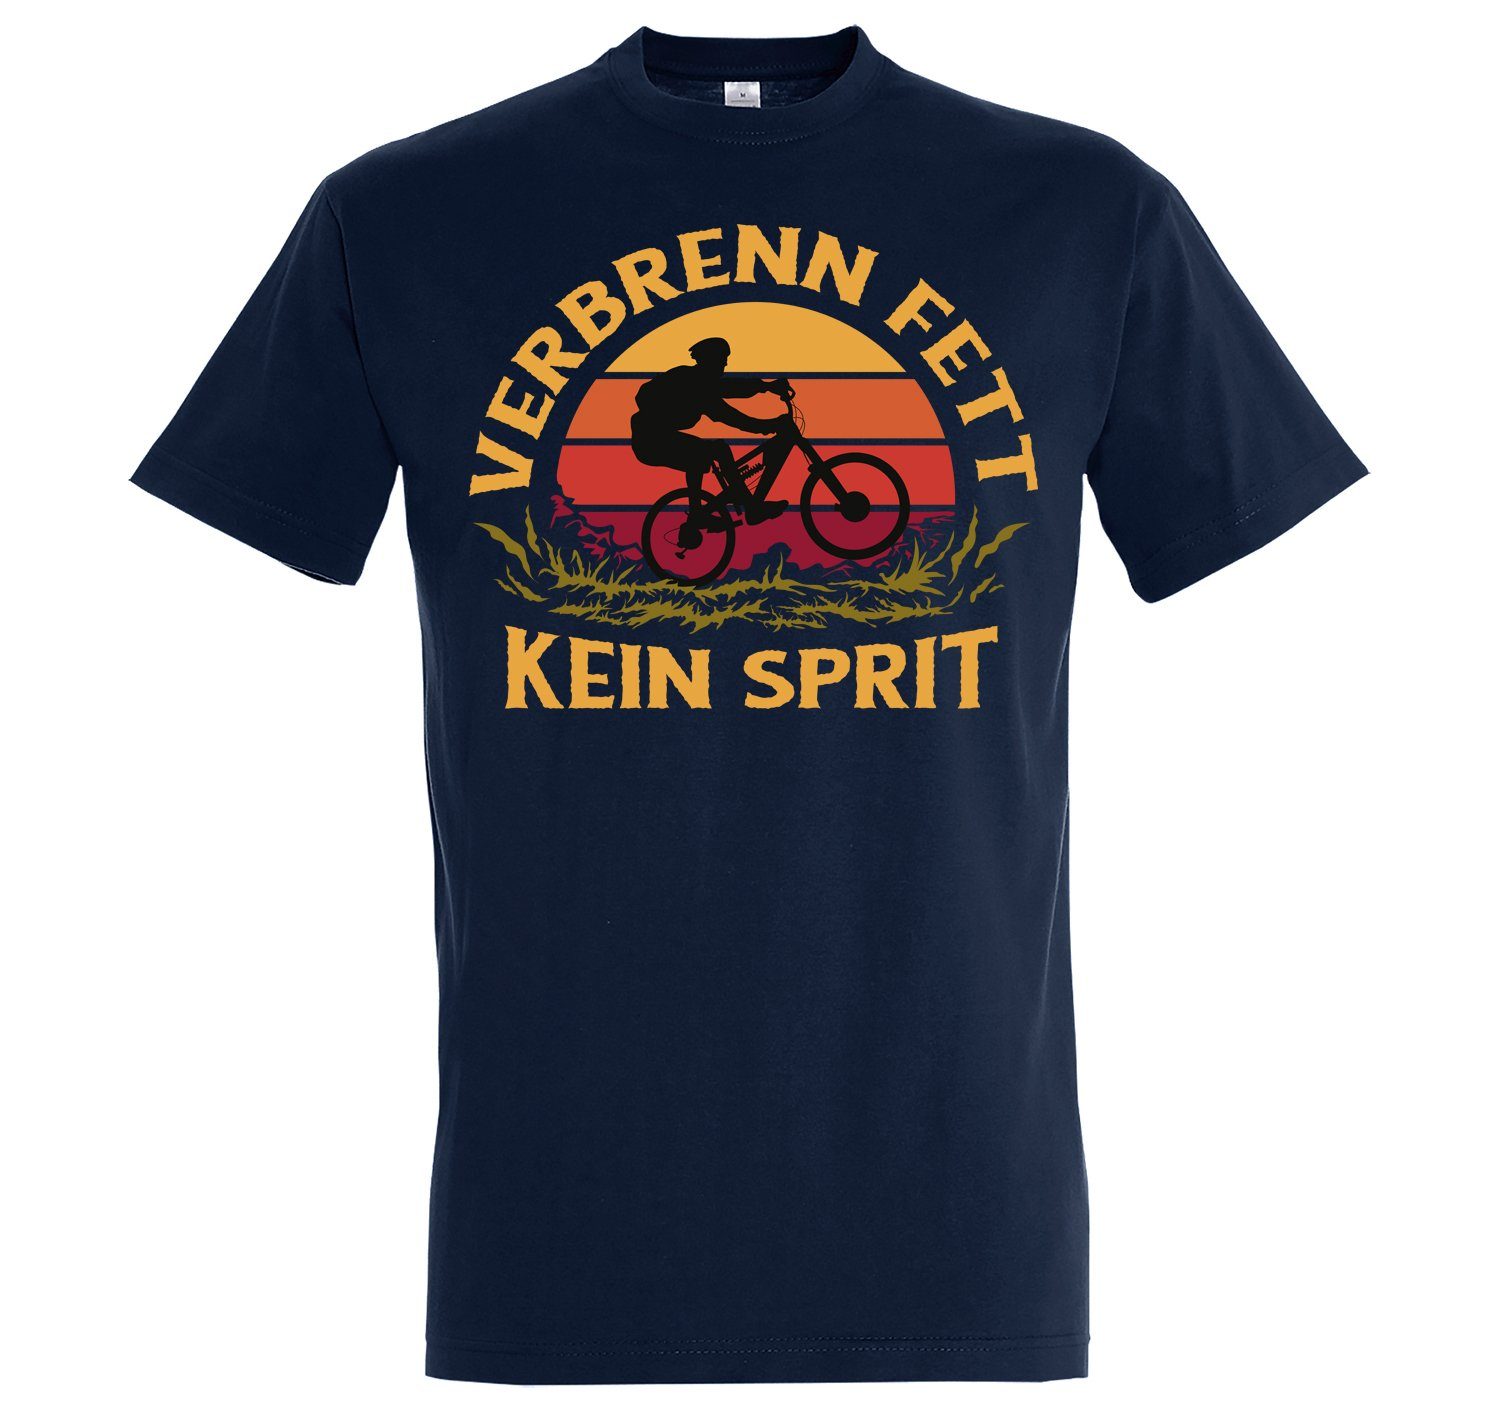 Designz Spruch "VerbrennFett" T-Shirt mit Navyblau T-Shirt Herren Youth lustigem